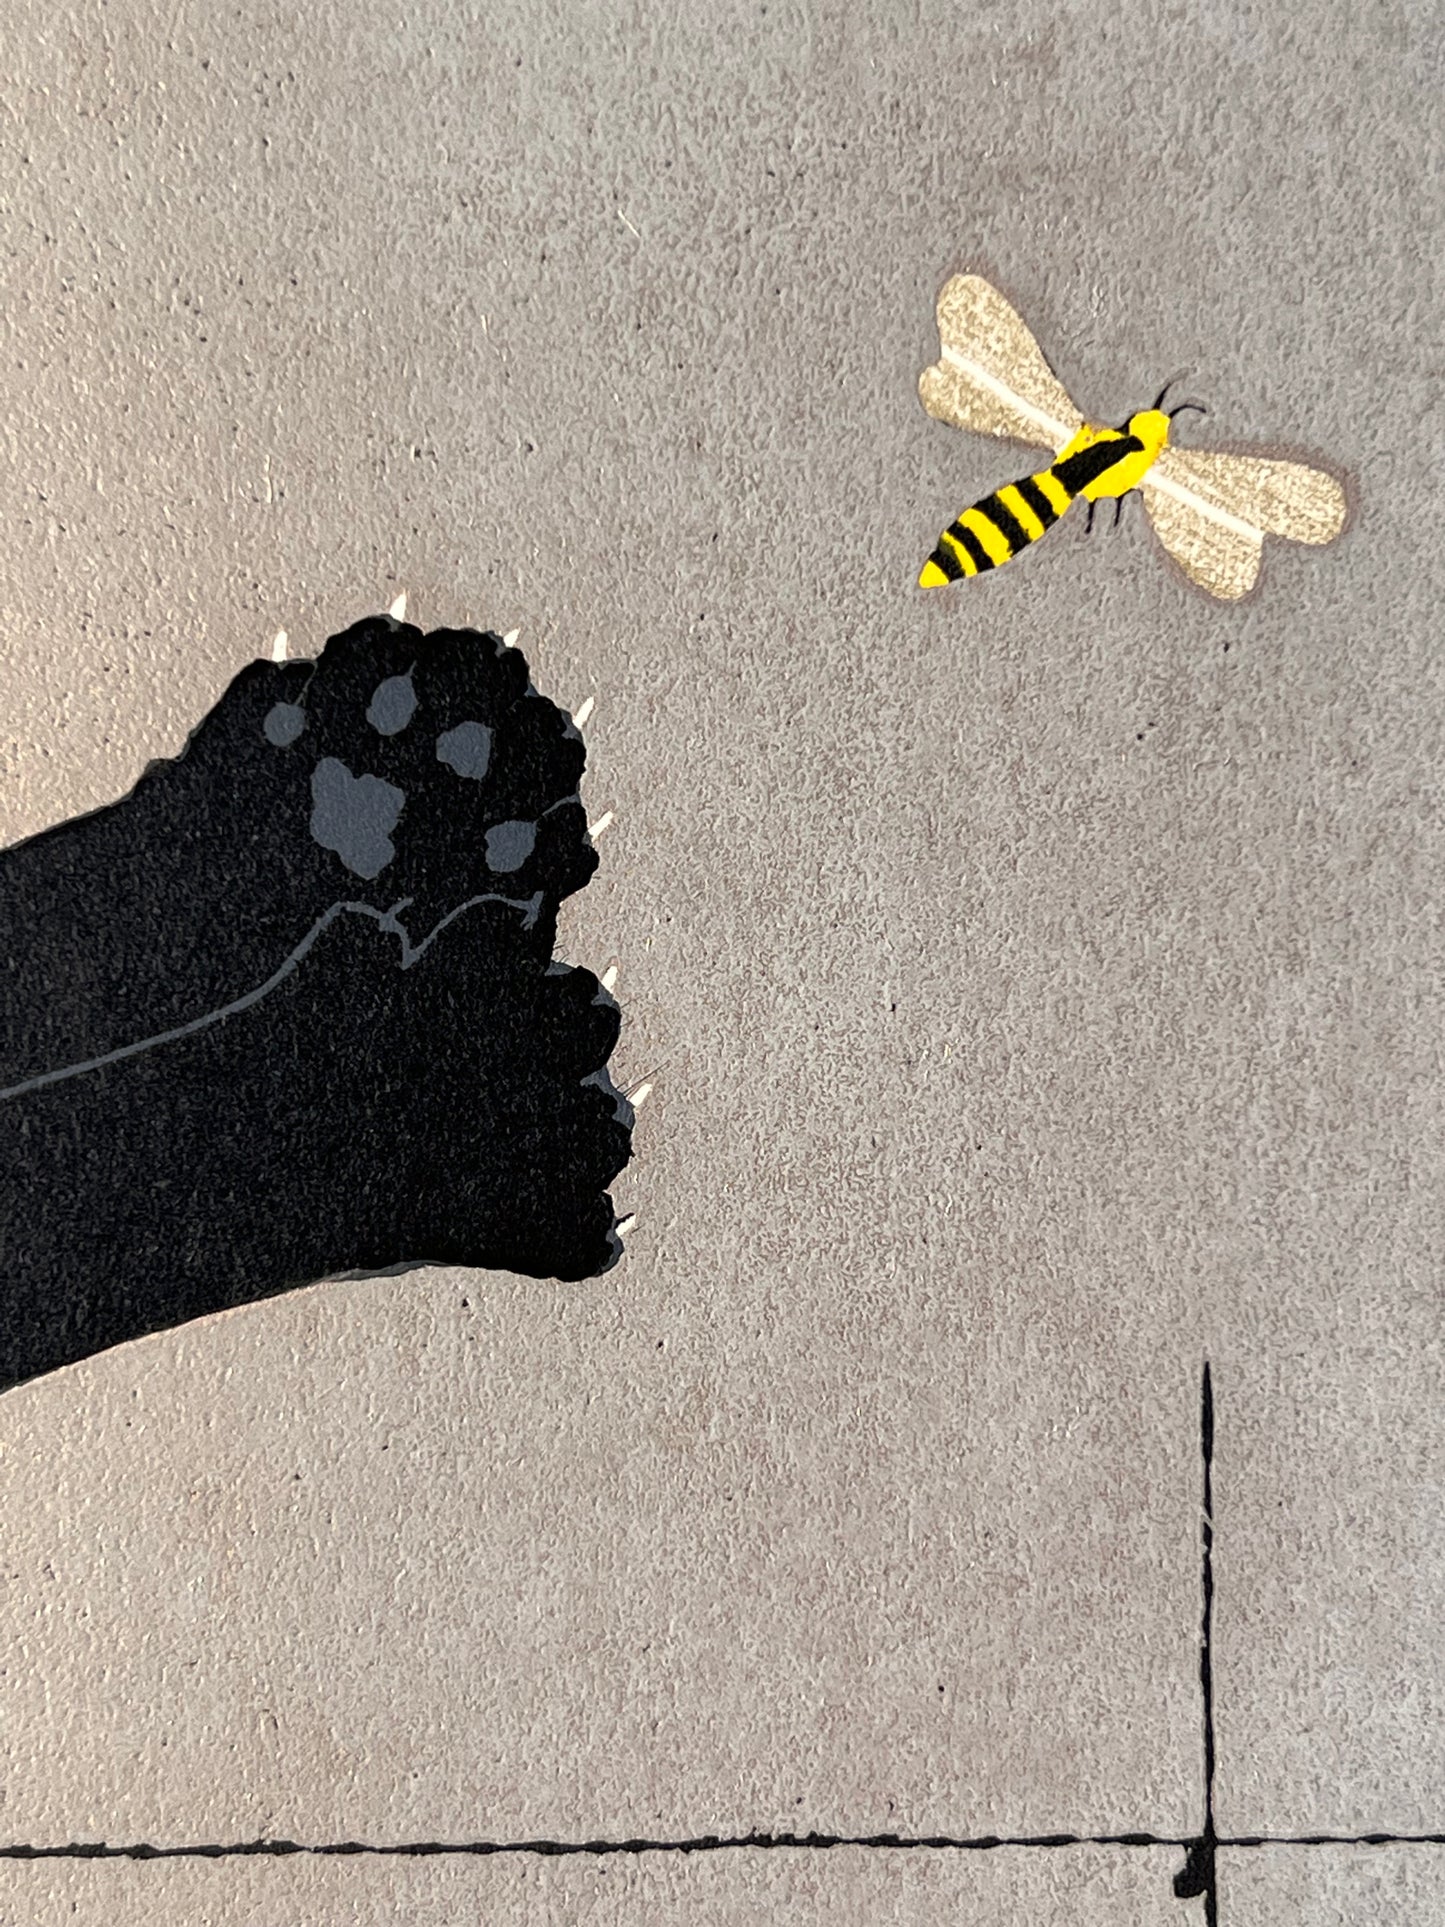 estampe japonaise chat noir sautant sur une abeille, gros plan sur l'abeille